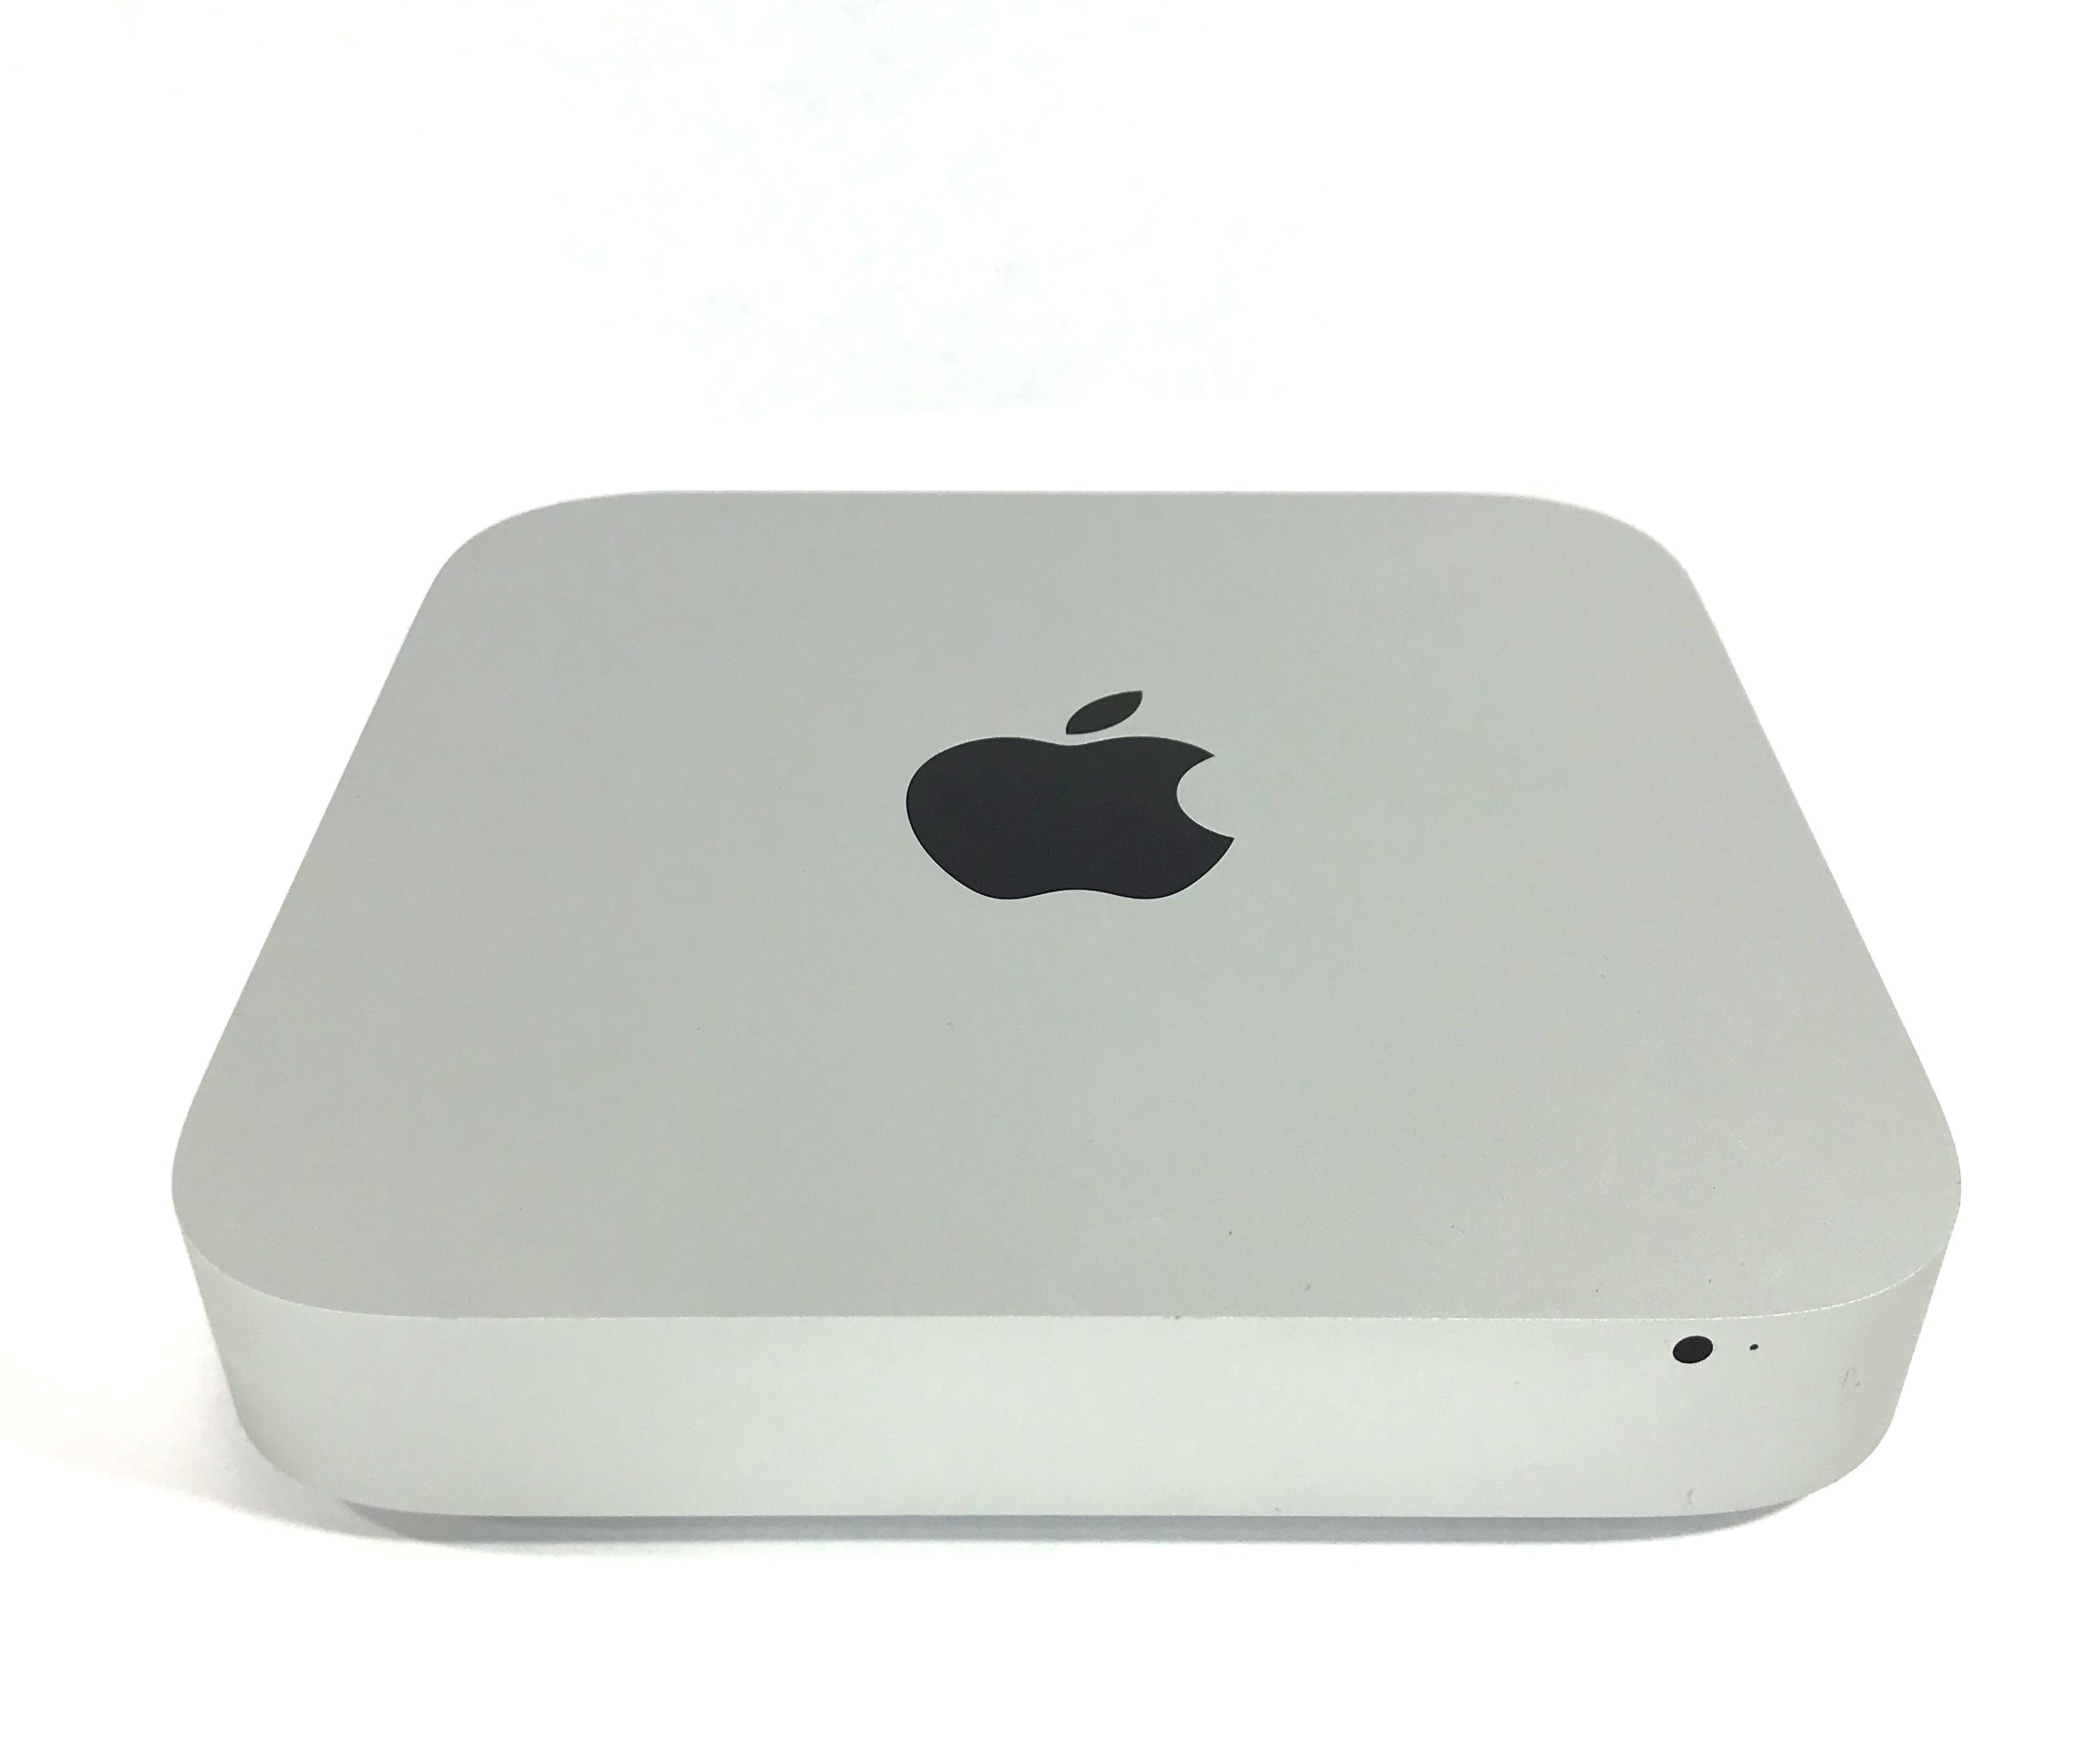 Apple Mac mini A1347 (Late 2014) Dual Core i5 2.6GHz 8GB 1TB MGEN2LL/A